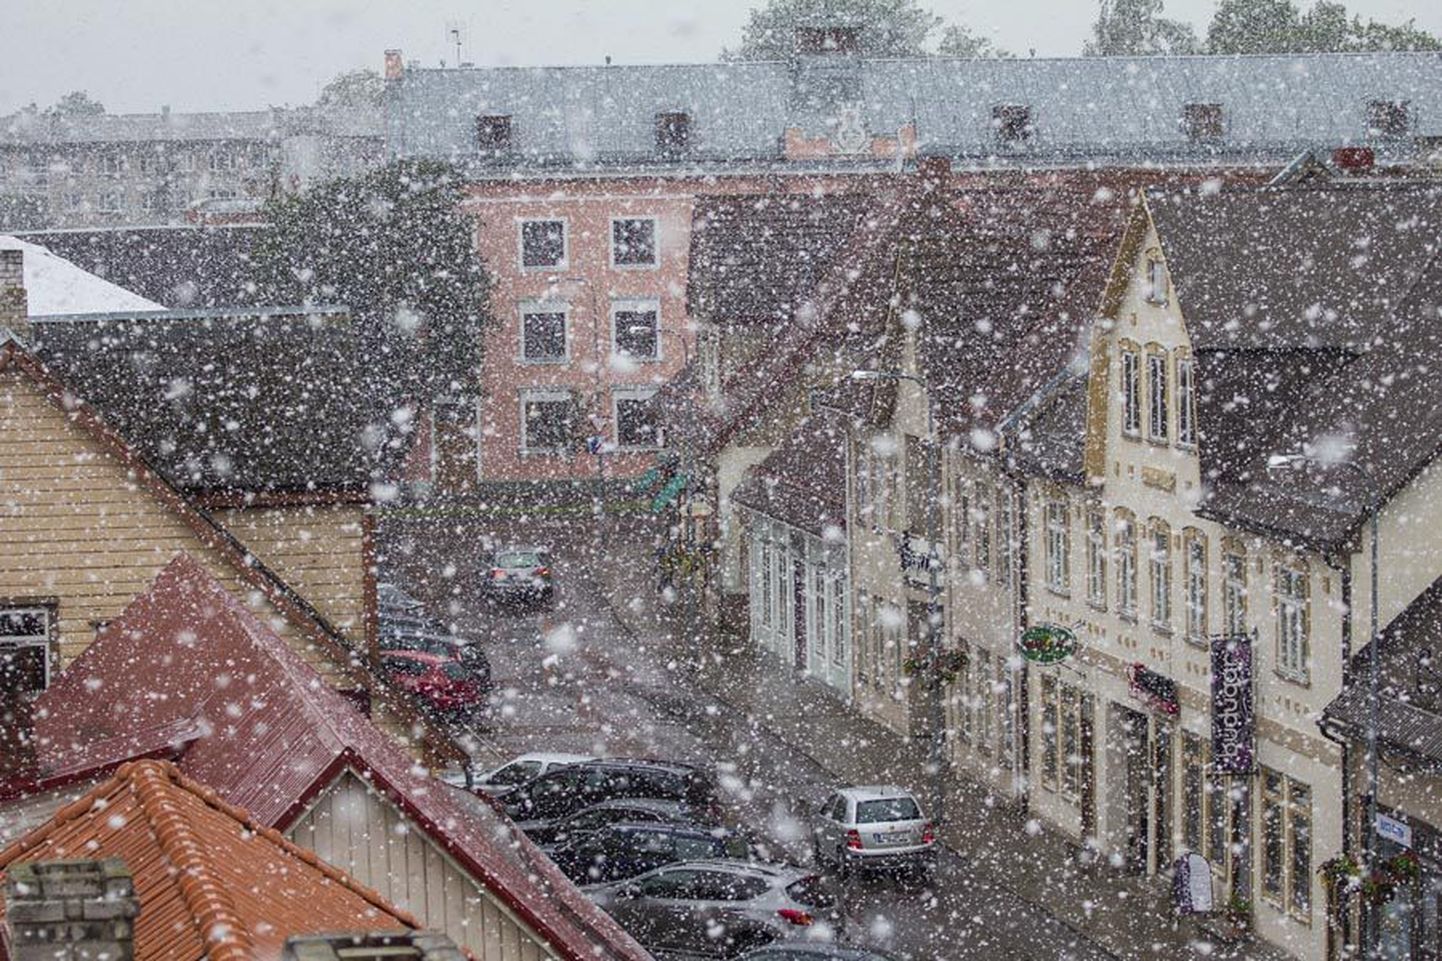 Kuigi esimene suvekuu on jõudnud juba teise poolde, sadas eile mitmel pool tihedat lund, nii ka Viljandi kesklinnas.